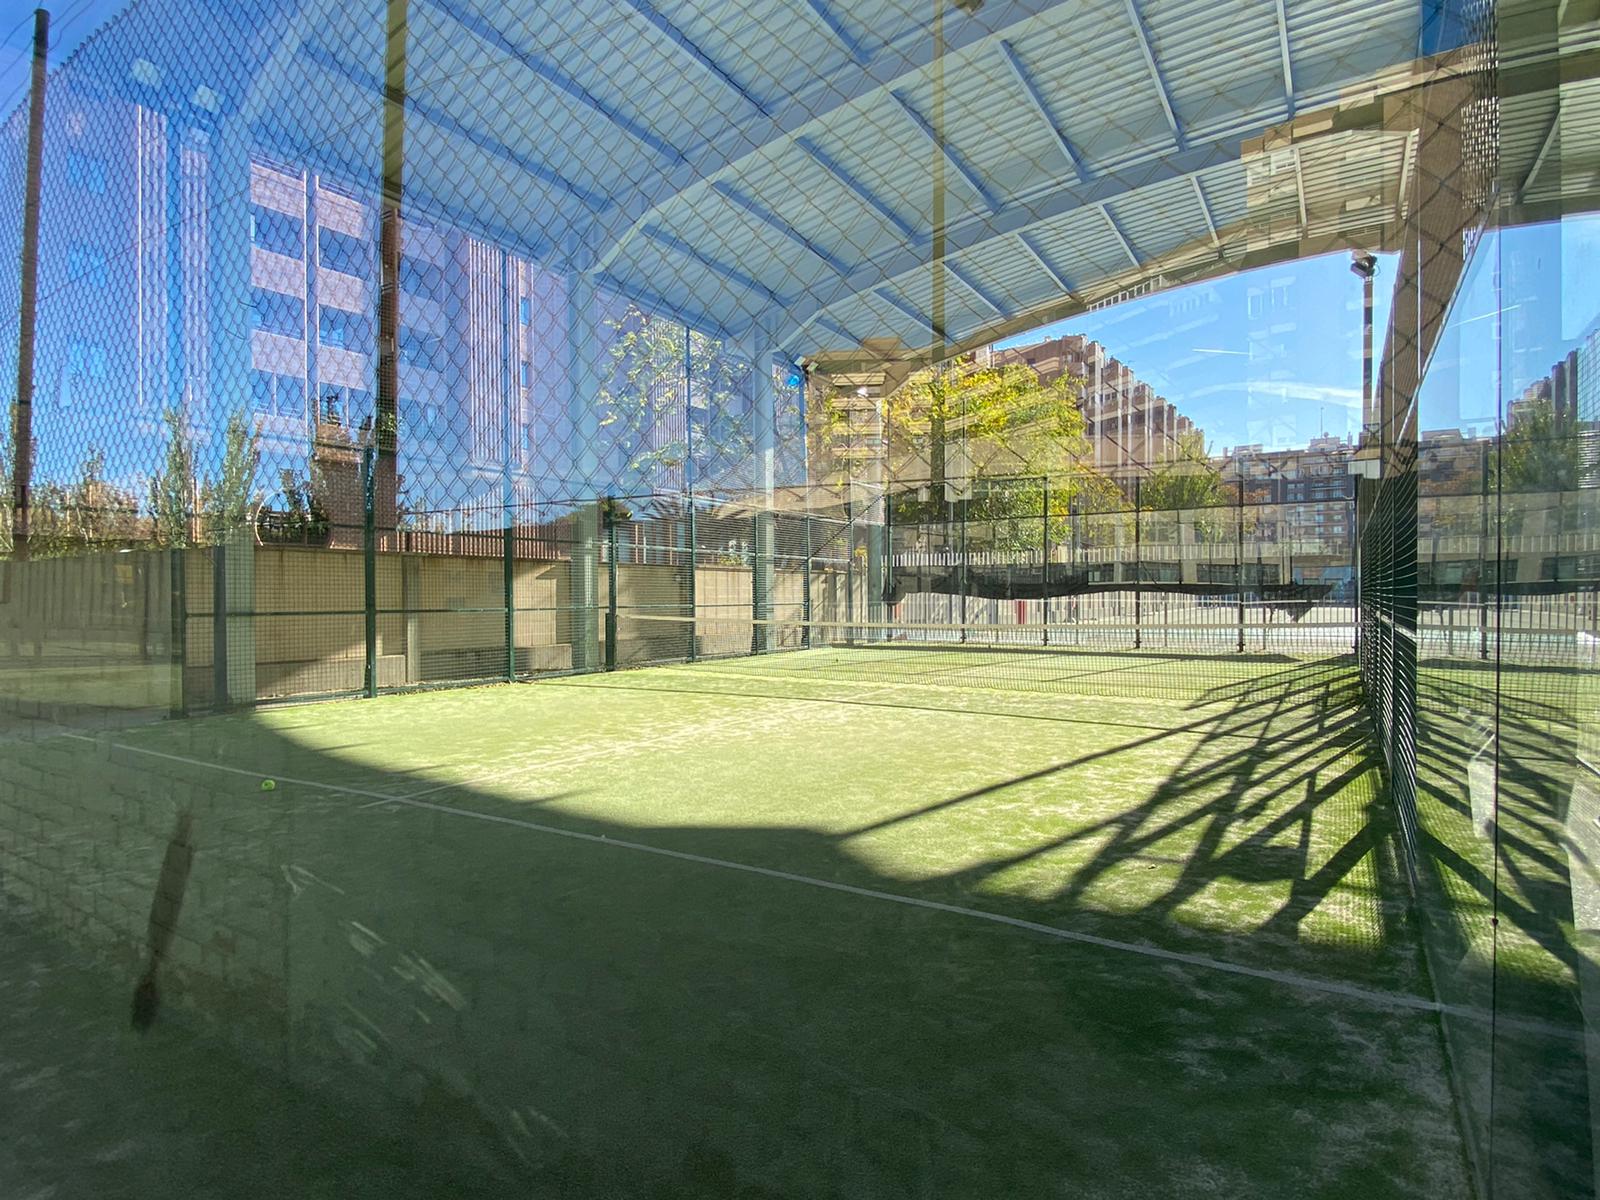 Actividad de CONUSLTA PADEL, para Socios del Polideportivo San Agust�n Zaragoza